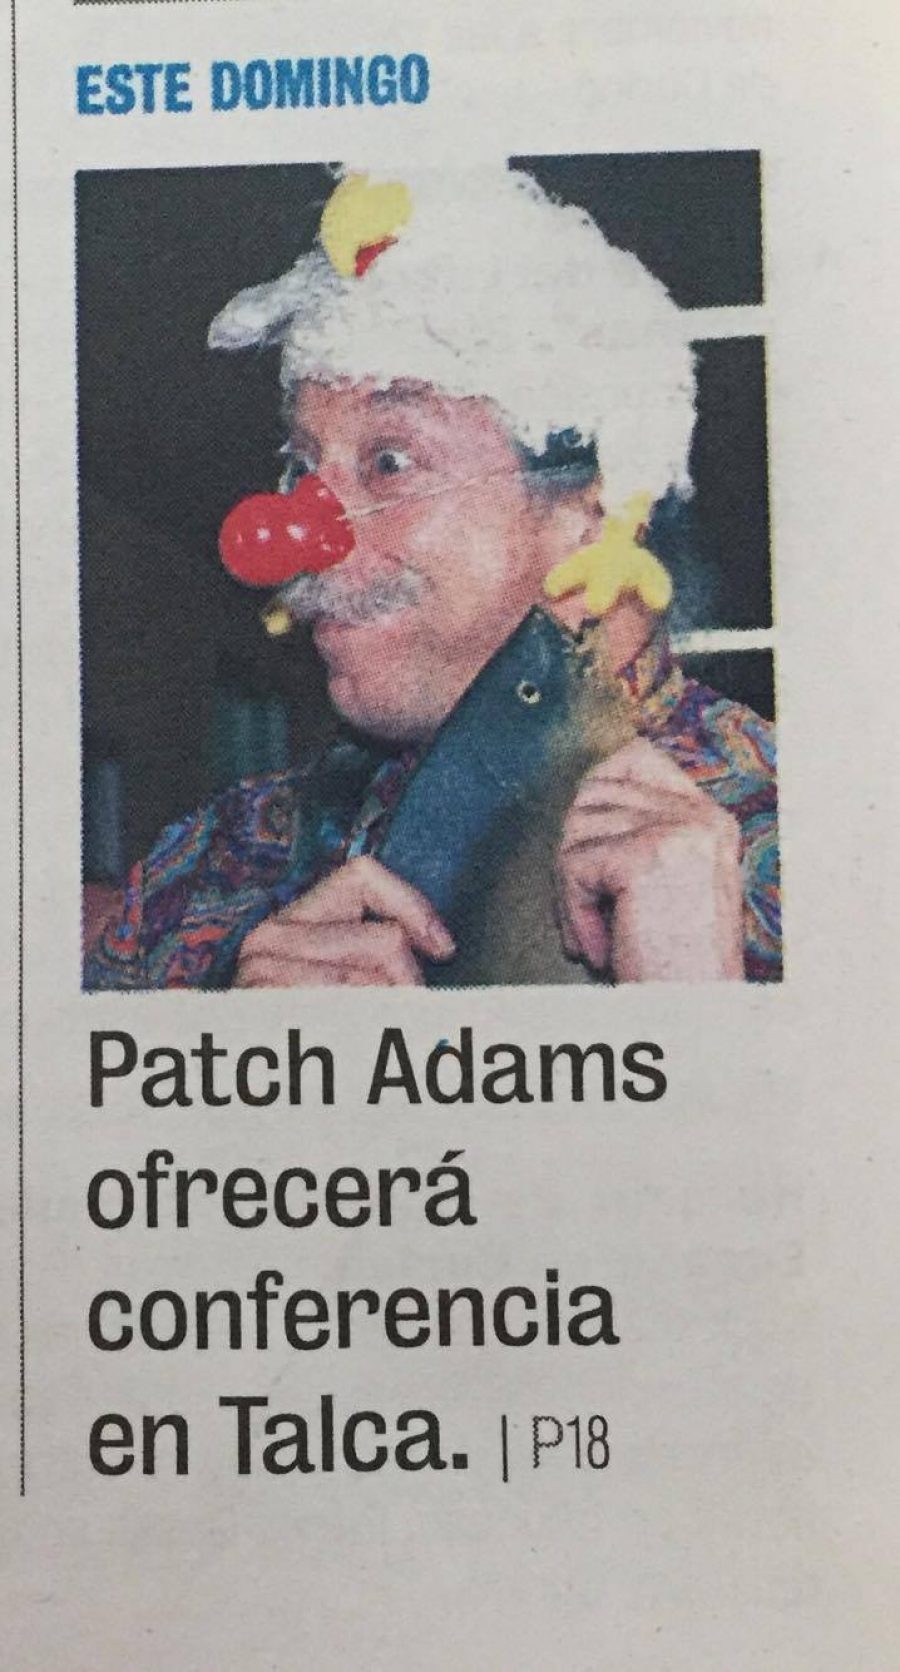 27 de octubre en Diario La Prensa: “Patch Adams ofrecerá conferencia en Talca”